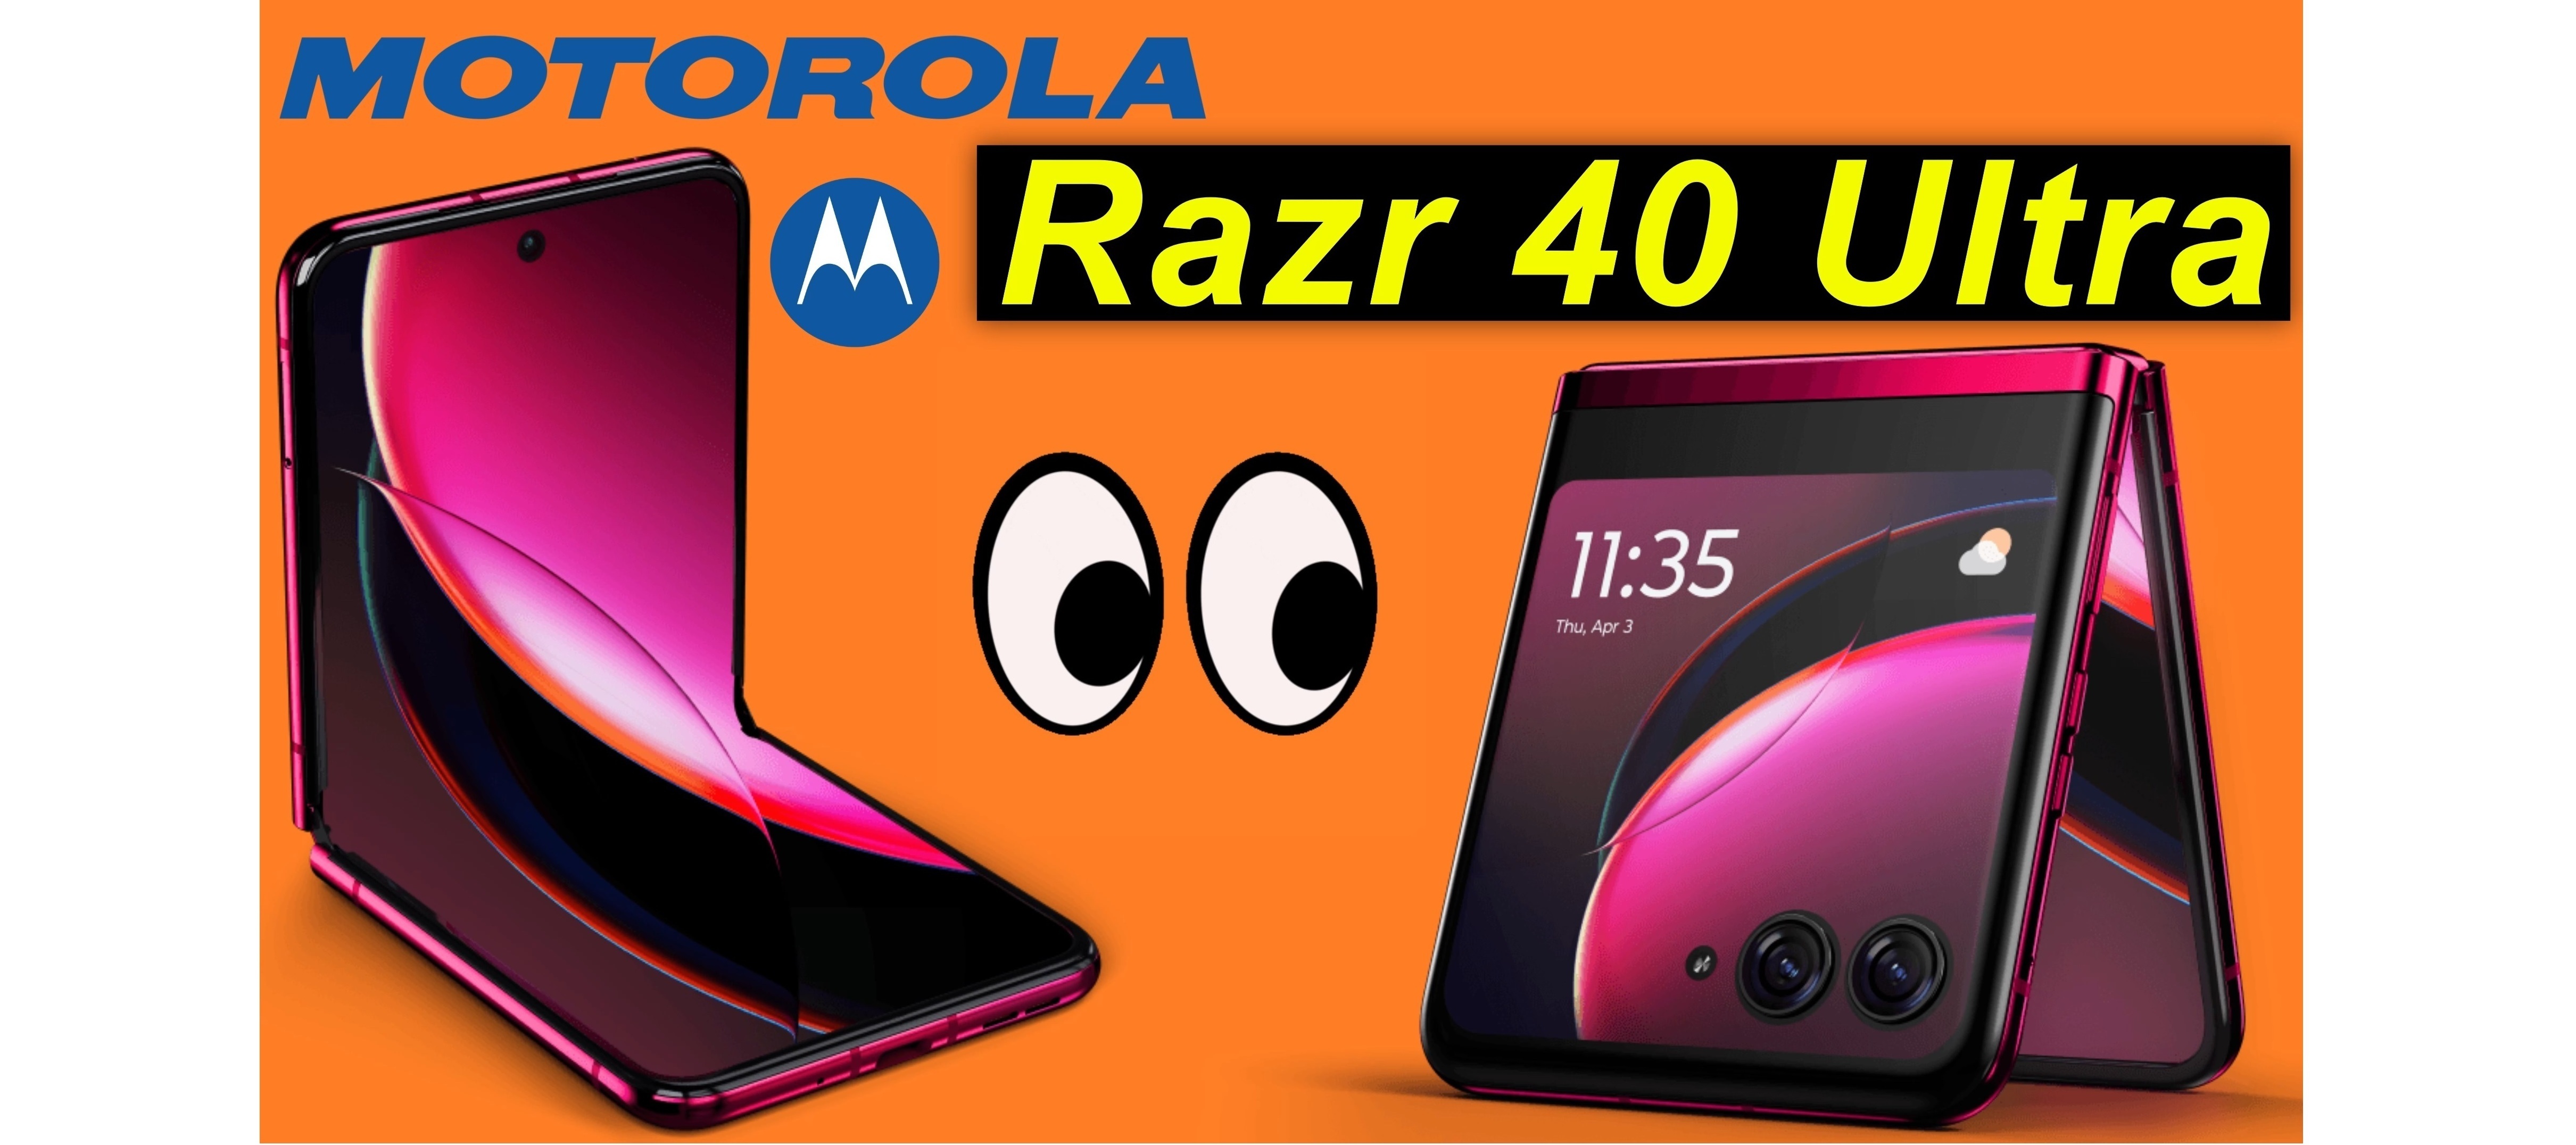 Motorola Razr 40 Ultra - auspacken und Ersteindruck | SeppelPower